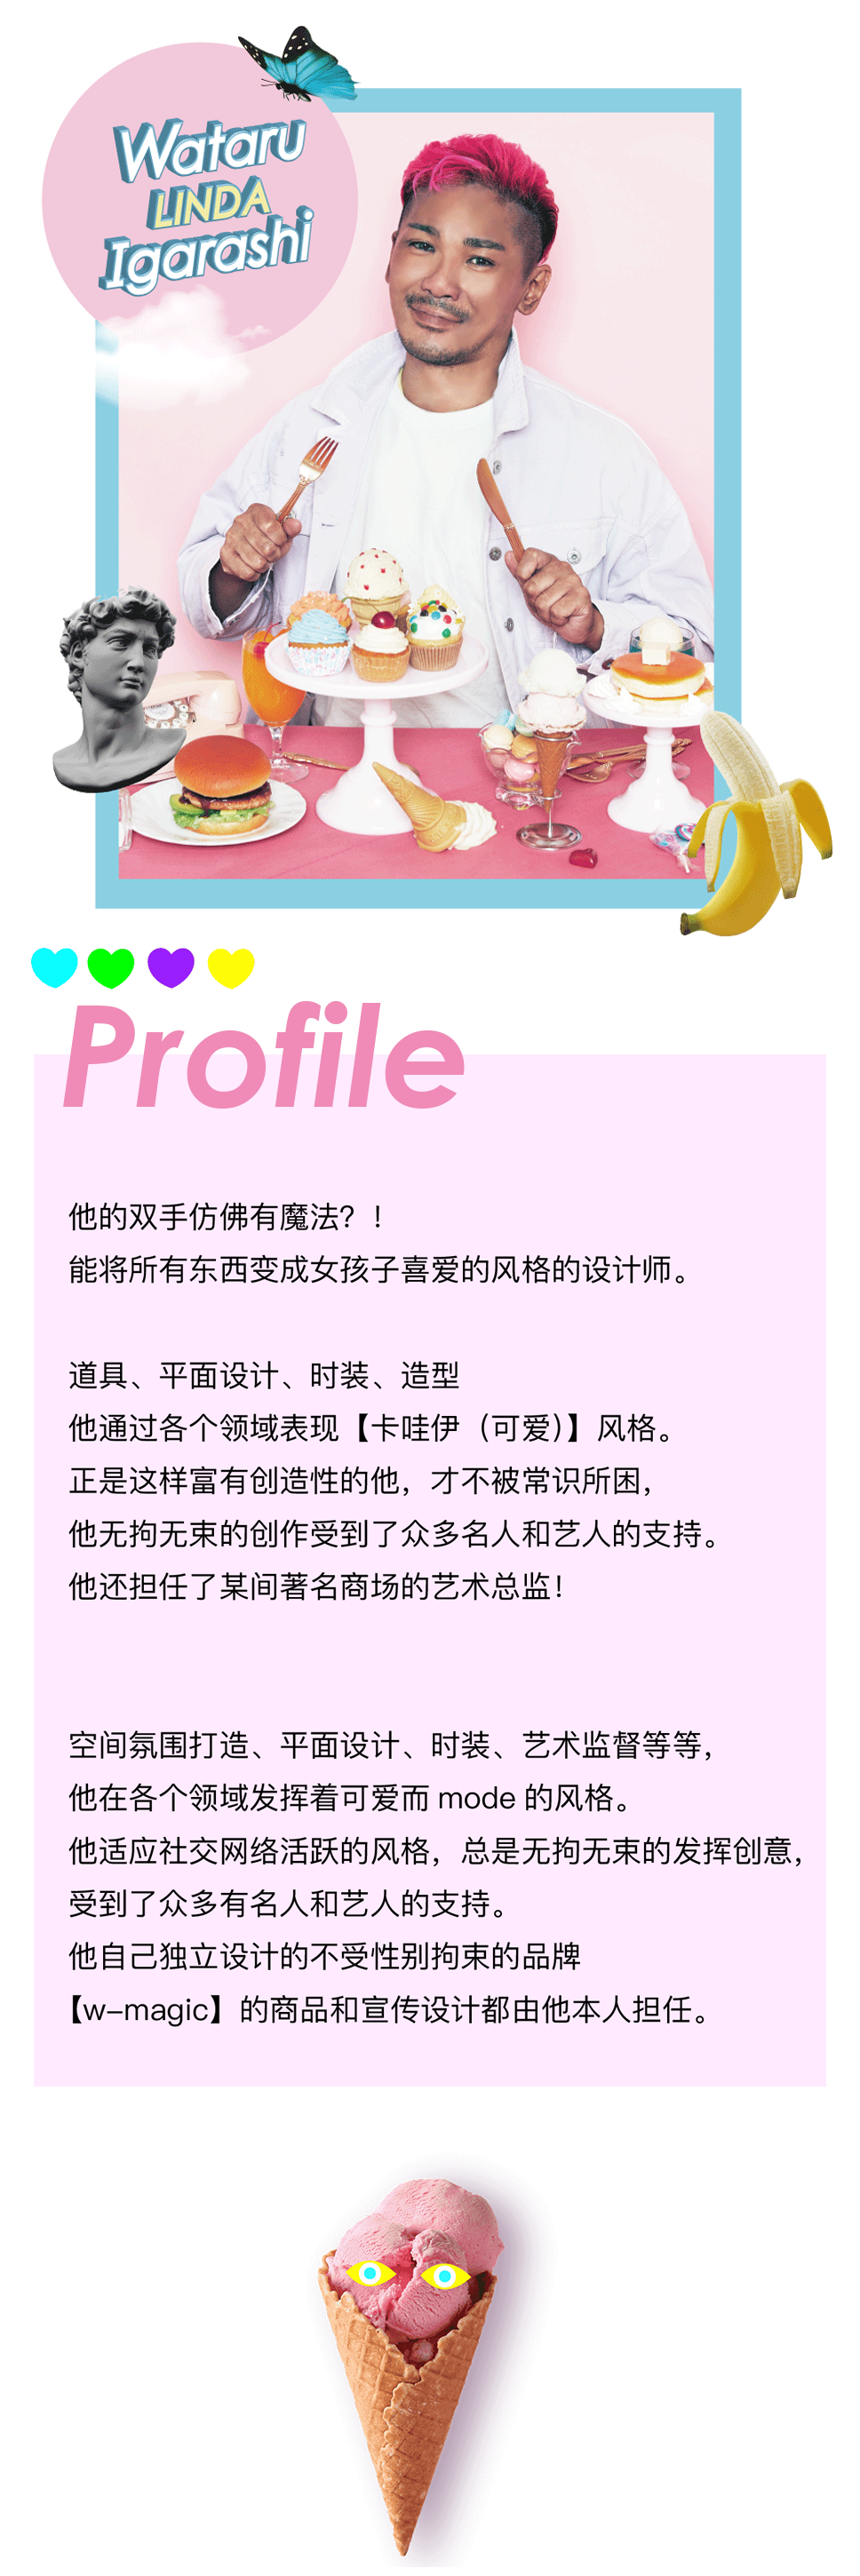 profile1_sp_ch